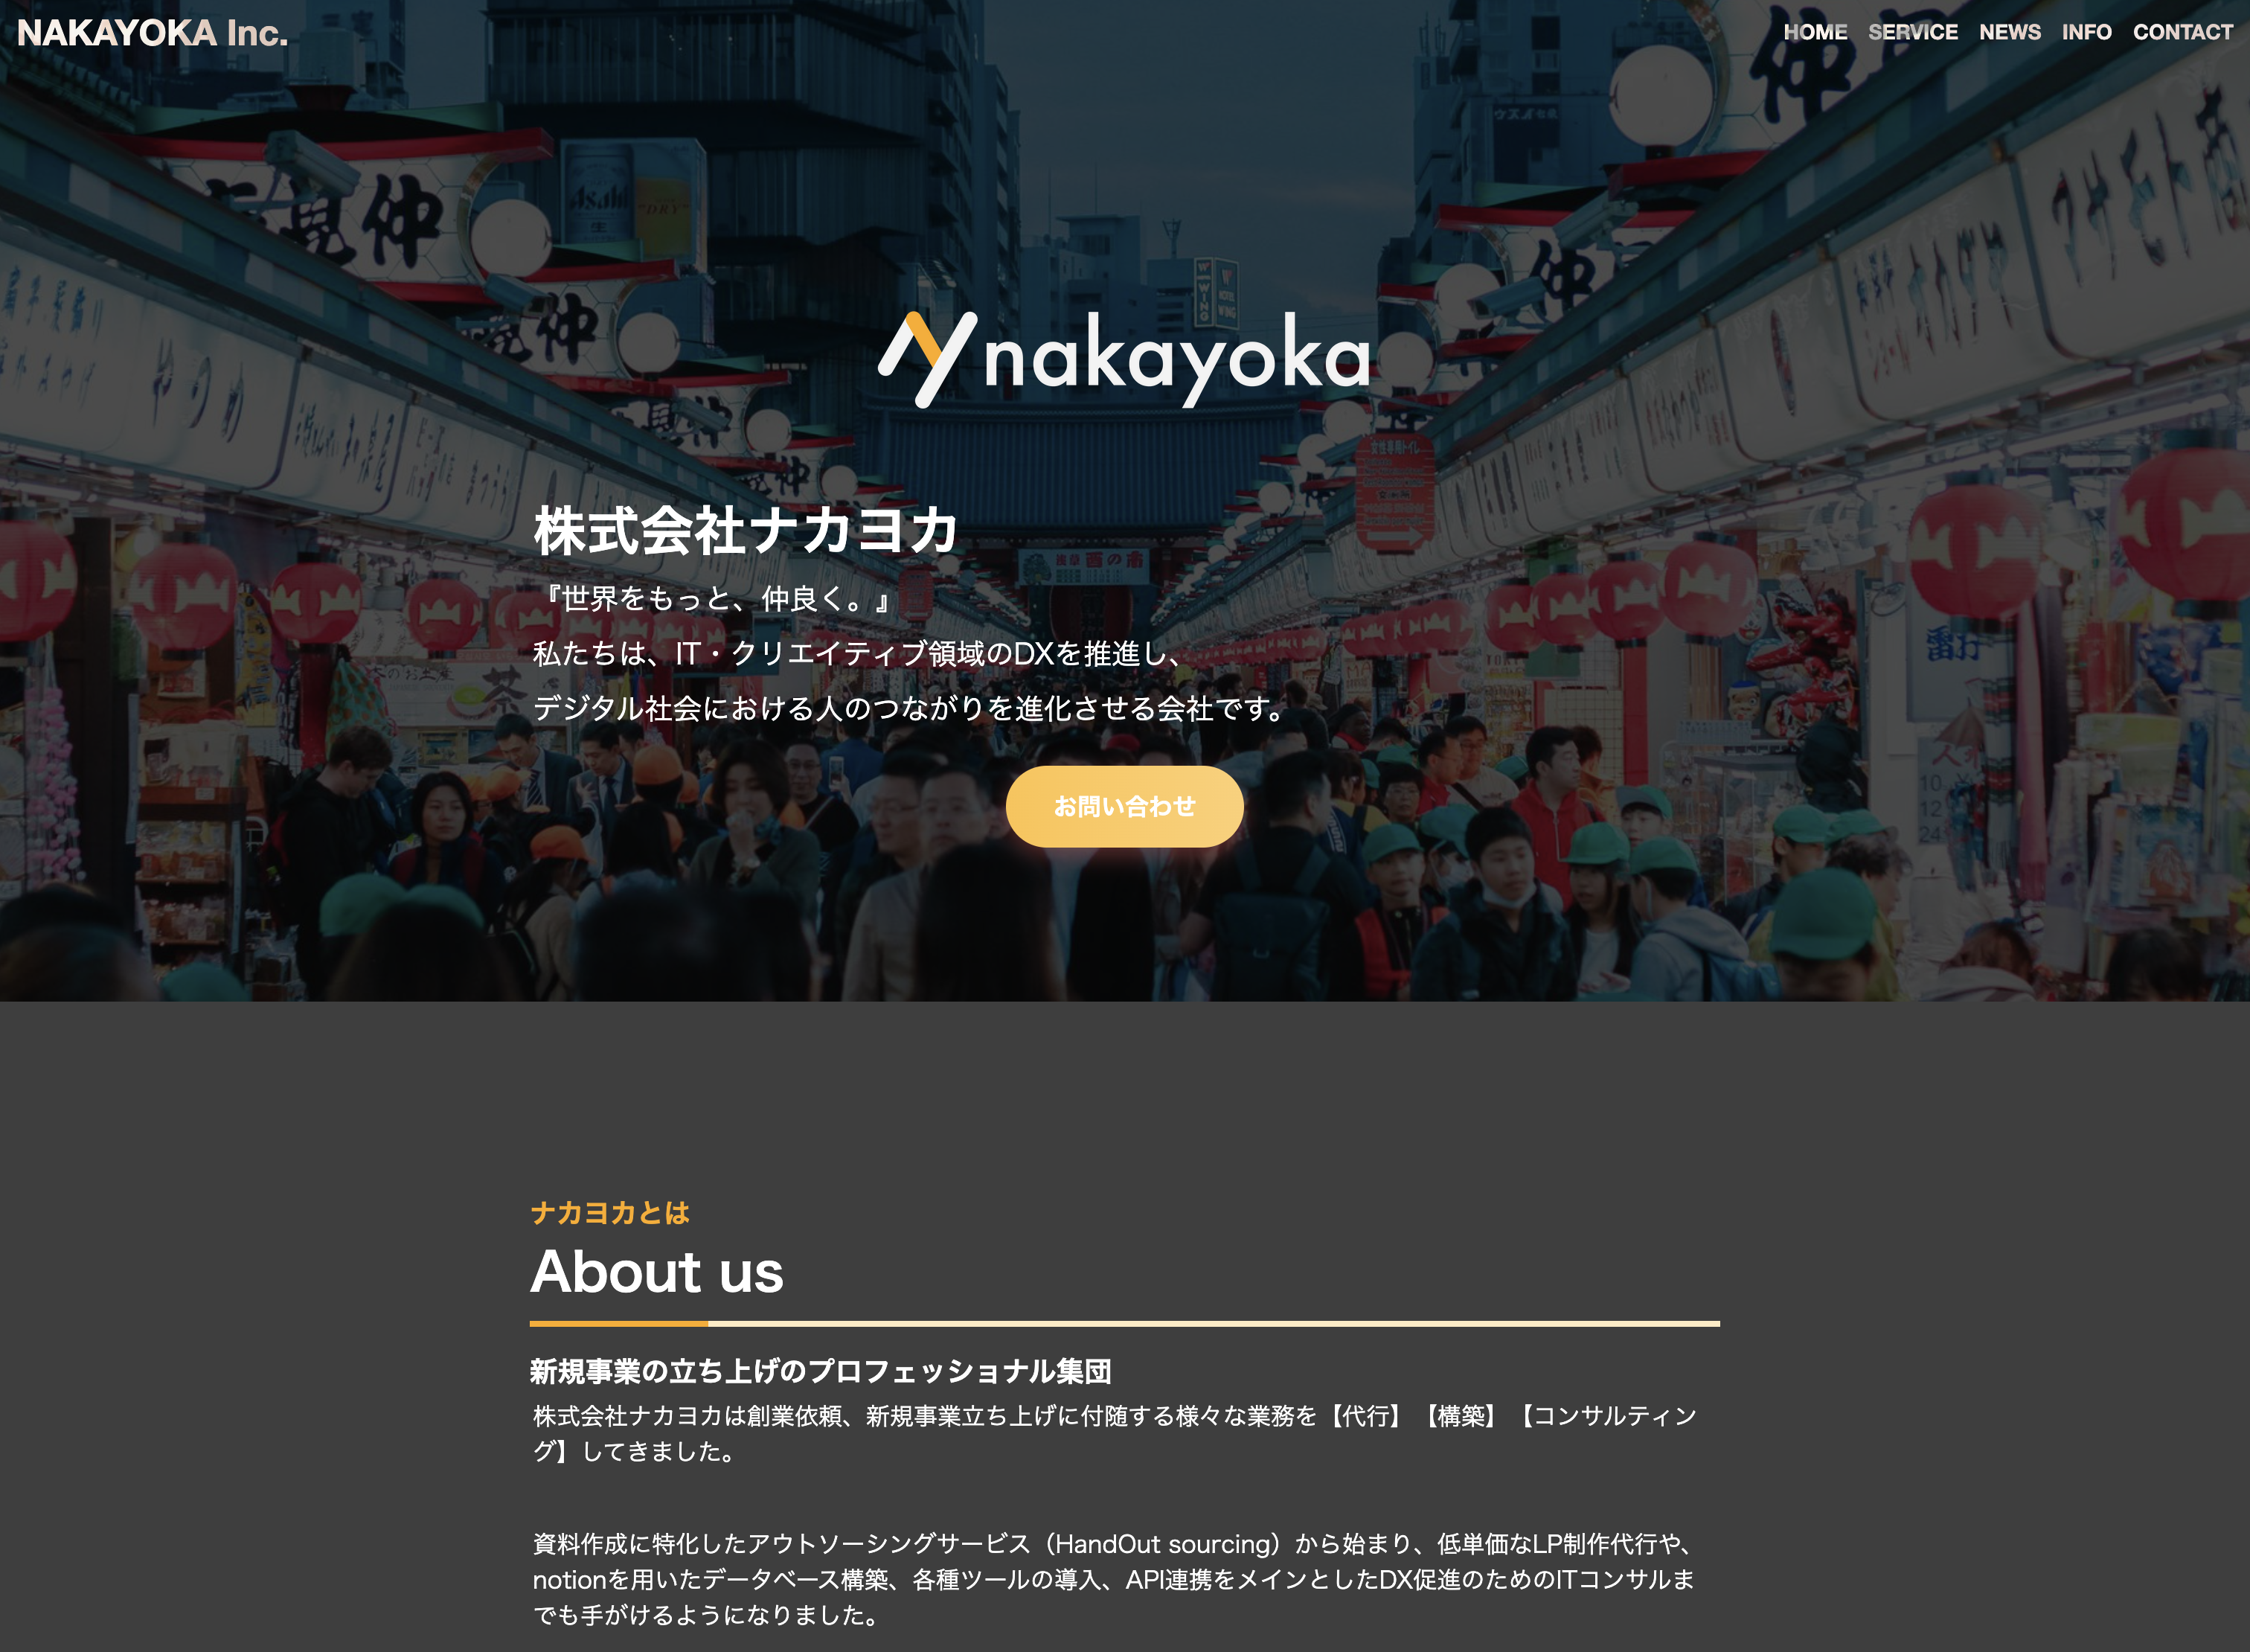 株式会社ナカヨカの株式会社ナカヨカ:コンサルティングサービス